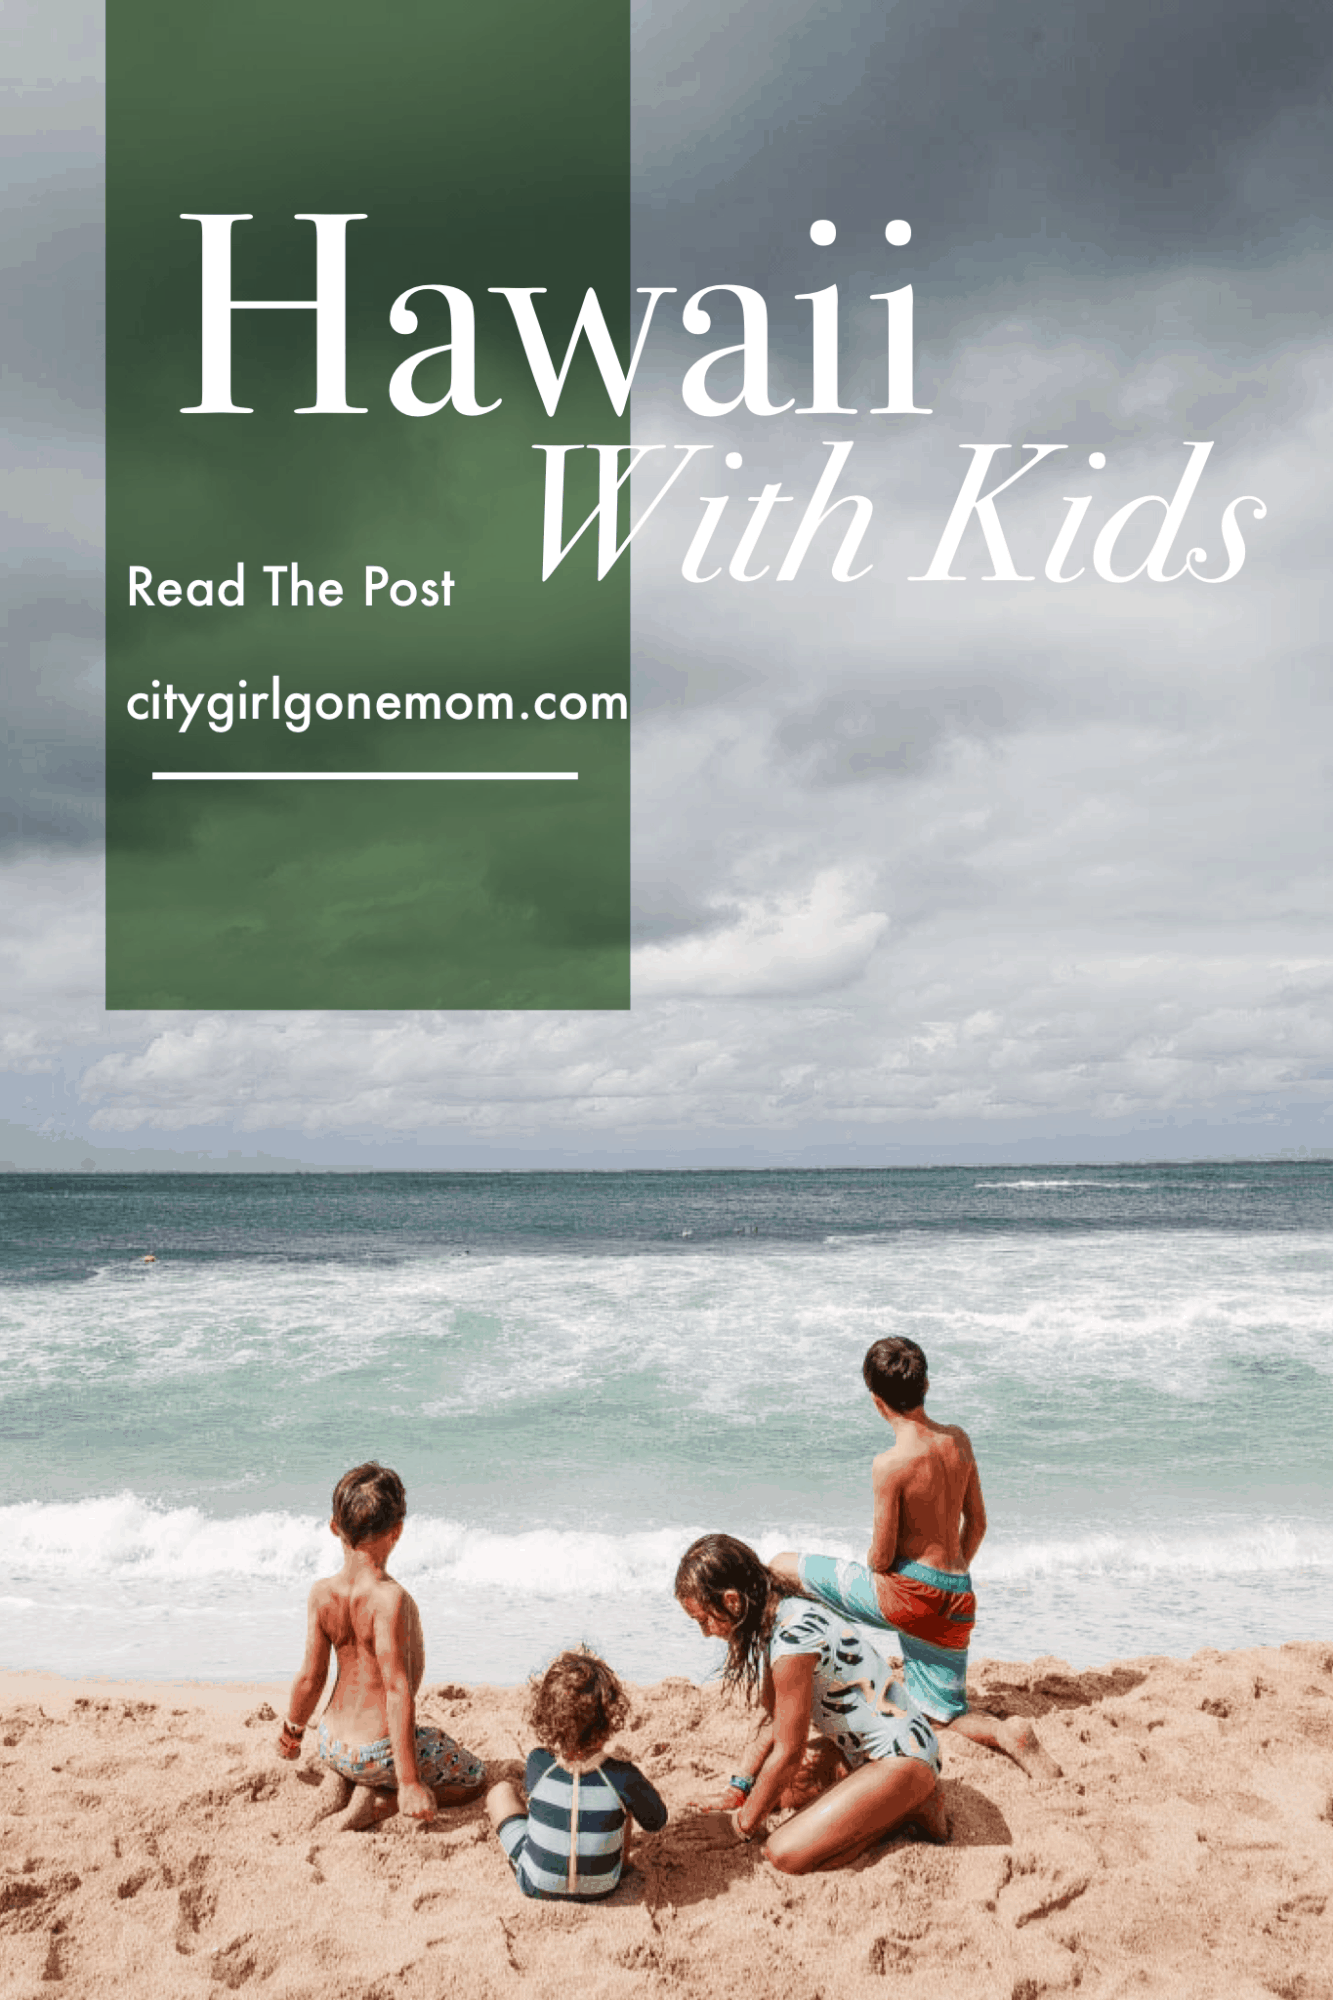 Hawaii with kids